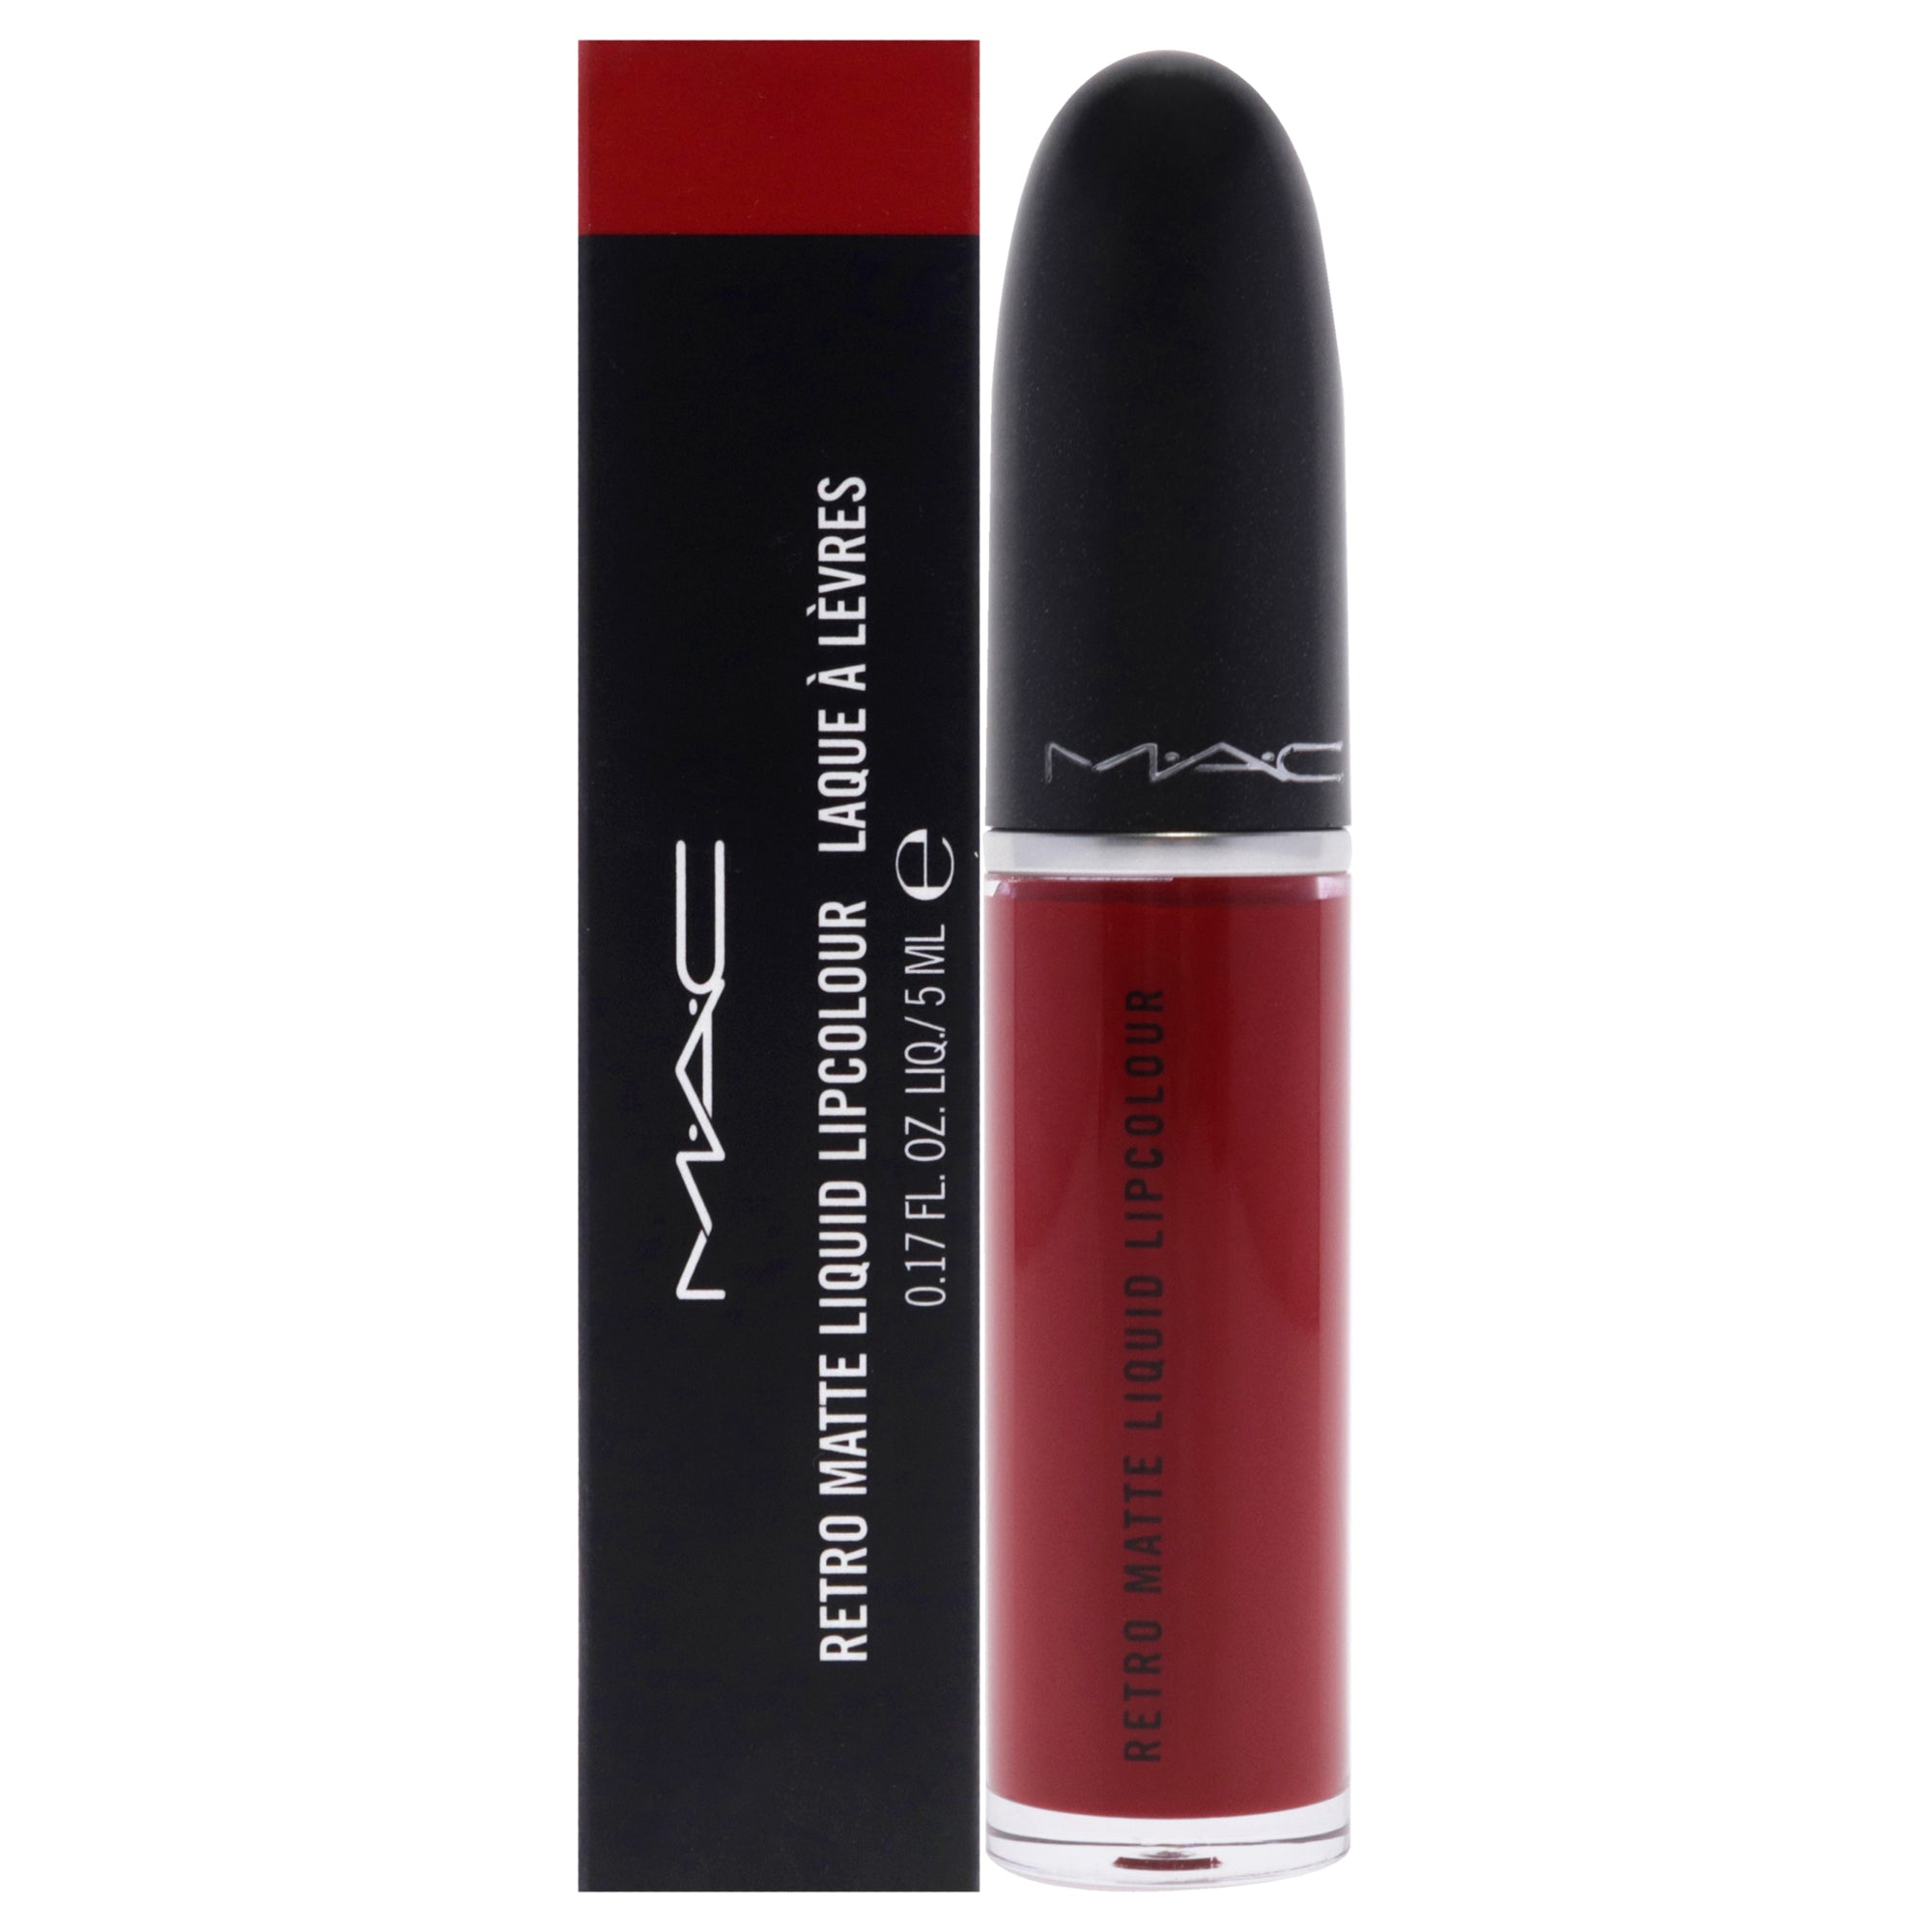 Retro Matte Liquid Lipstick - 105 Feels So Grand by MAC for Women - 0.17 oz Lipstick